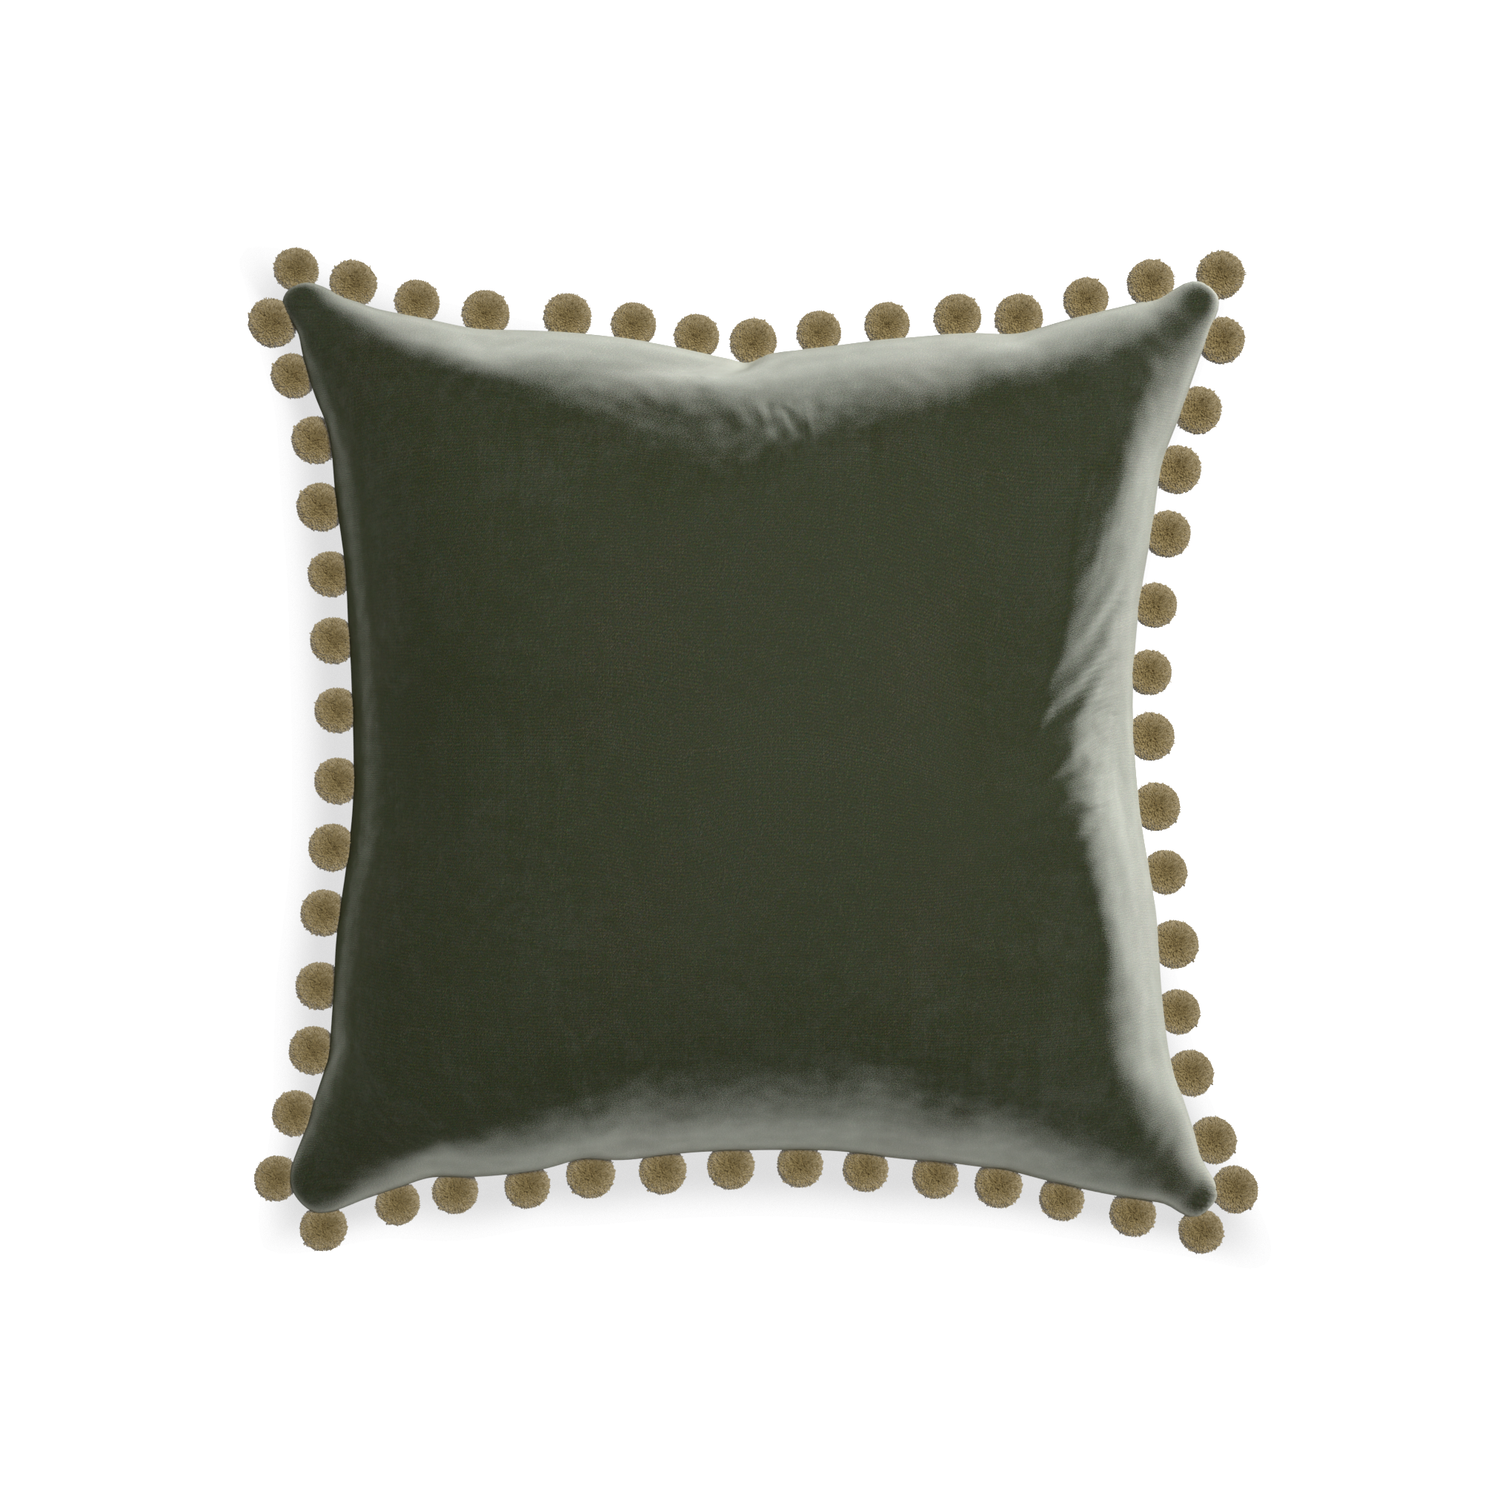 square fern green velvet pillow with olive green pom poms